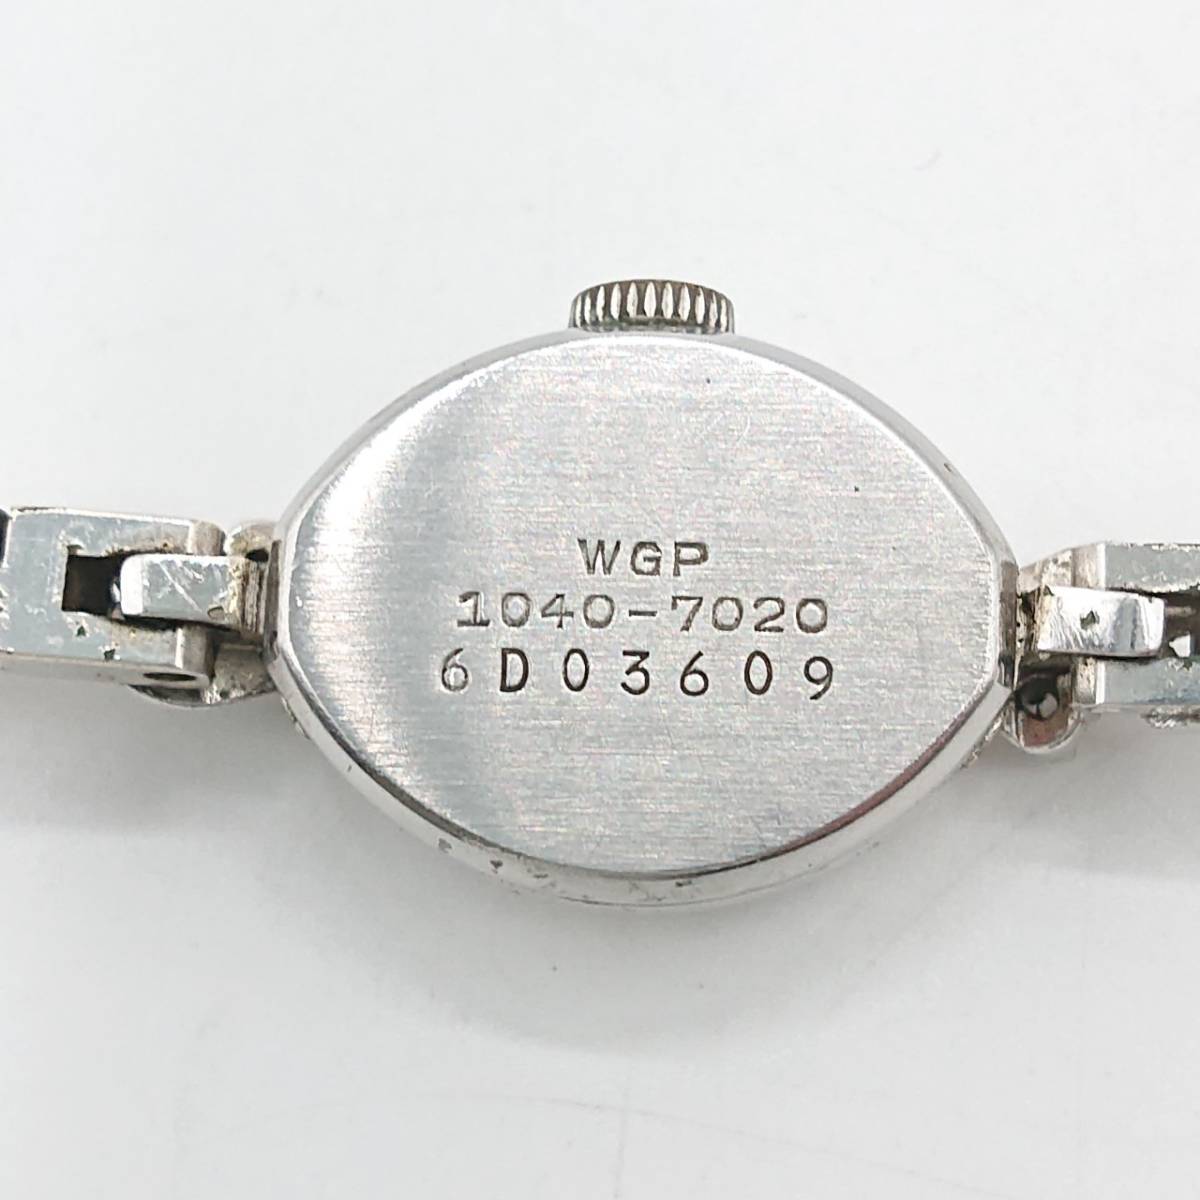 【不動】SEIKO セイコー SOLAR 手巻き 腕時計 シルバー文字盤 ティアドロップ 色石 1040-7020 6D03609_画像2